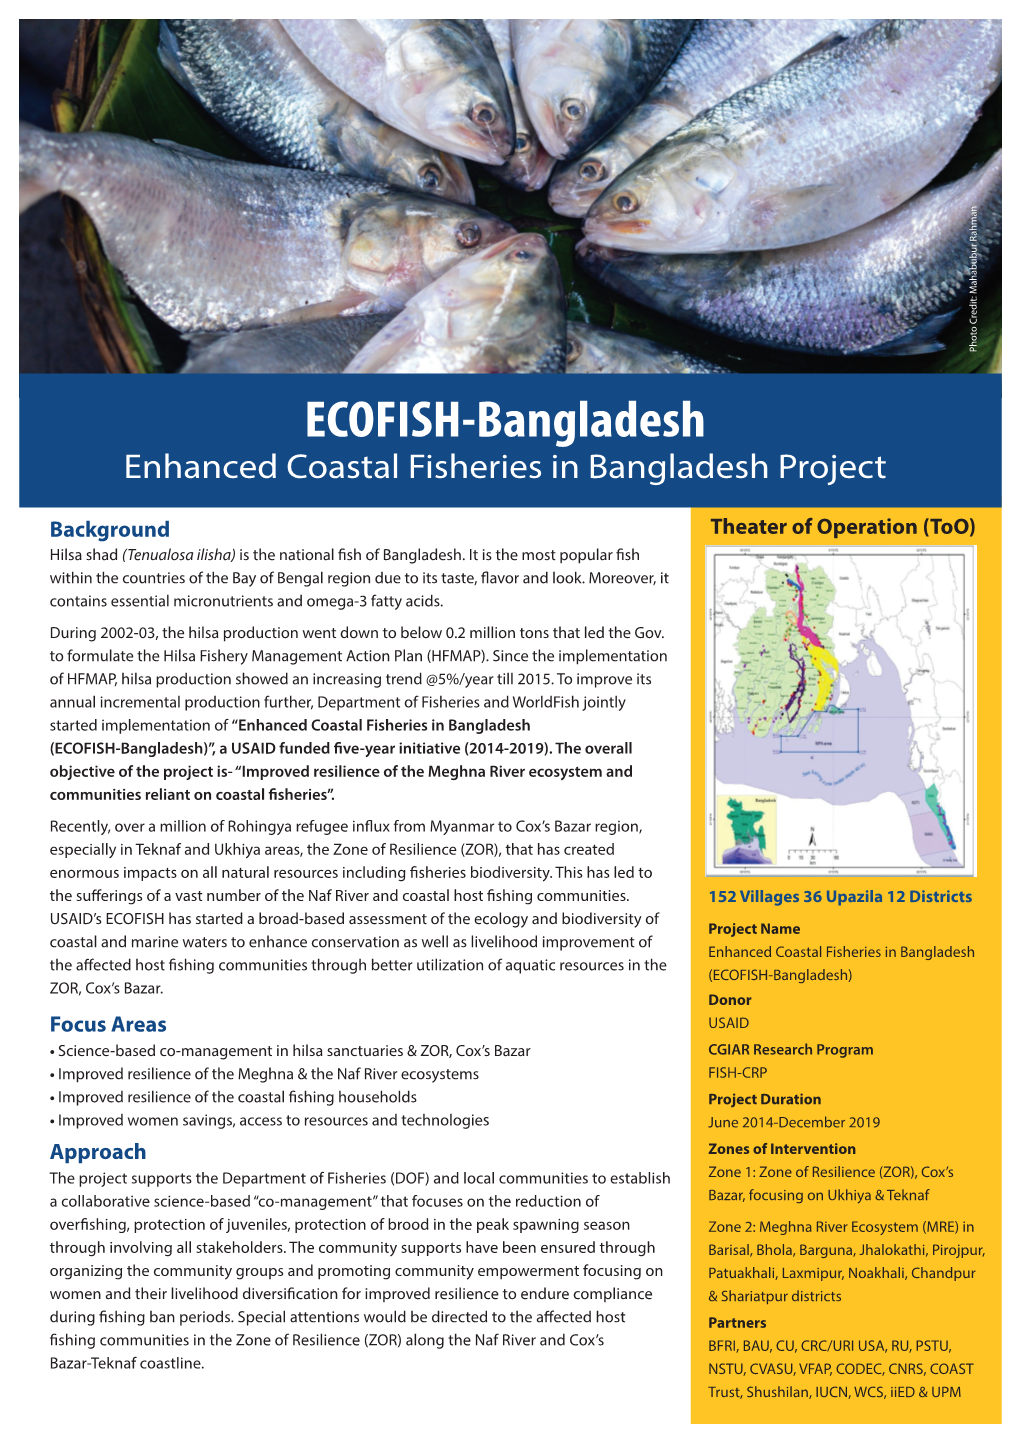 ECOFISH- Factsheet 10.7.19 Mahfuj Bhai